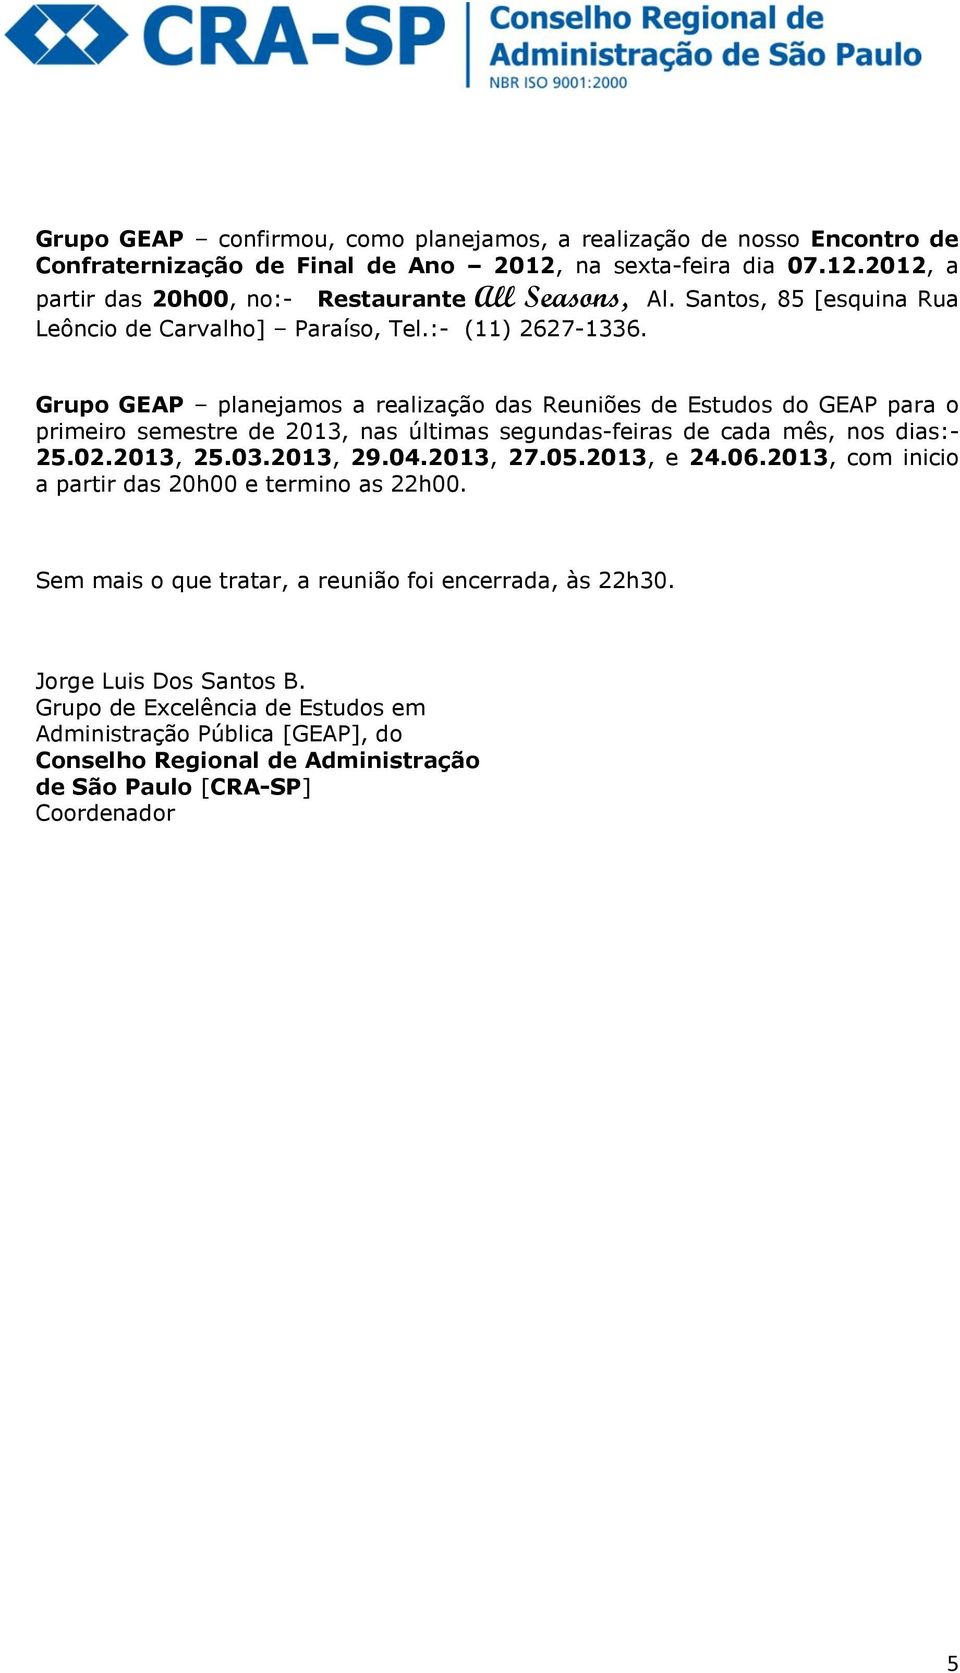 Santos, 85 [esquina Rua Grupo GEAP planejamos a realização das Reuniões de Estudos do GEAP para o primeiro semestre de 2013, nas últimas segundas-feiras de cada mês, nos dias:- 25.02.